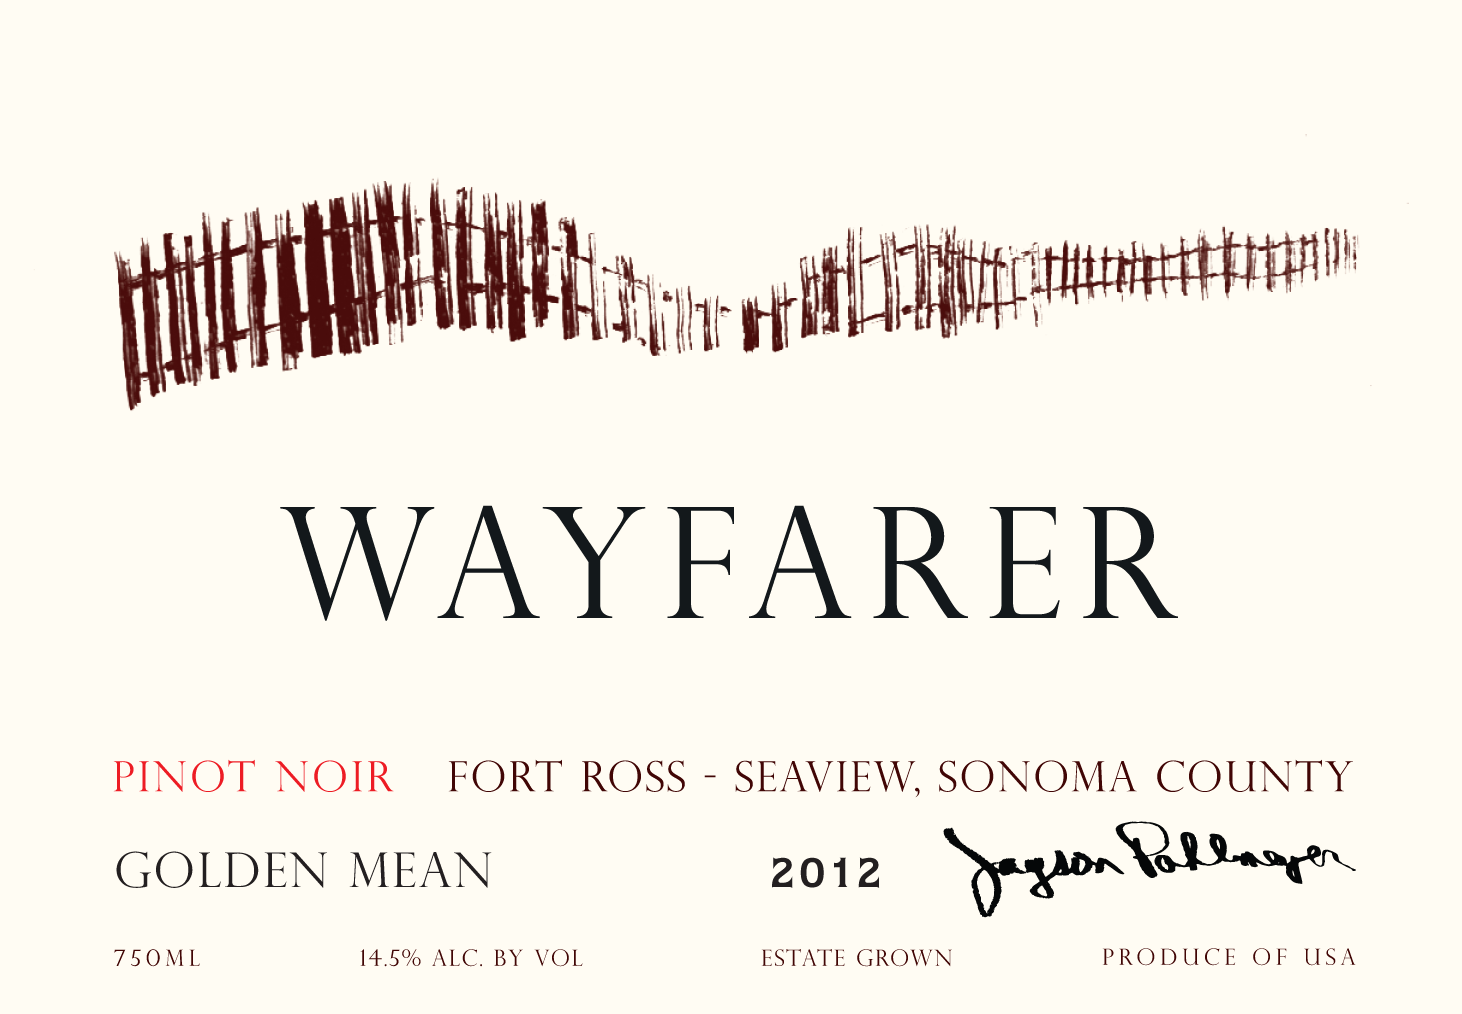 2013 Wayfarer Pinot Noir Golden Mean Fort Ross-Seaview Sonoma image